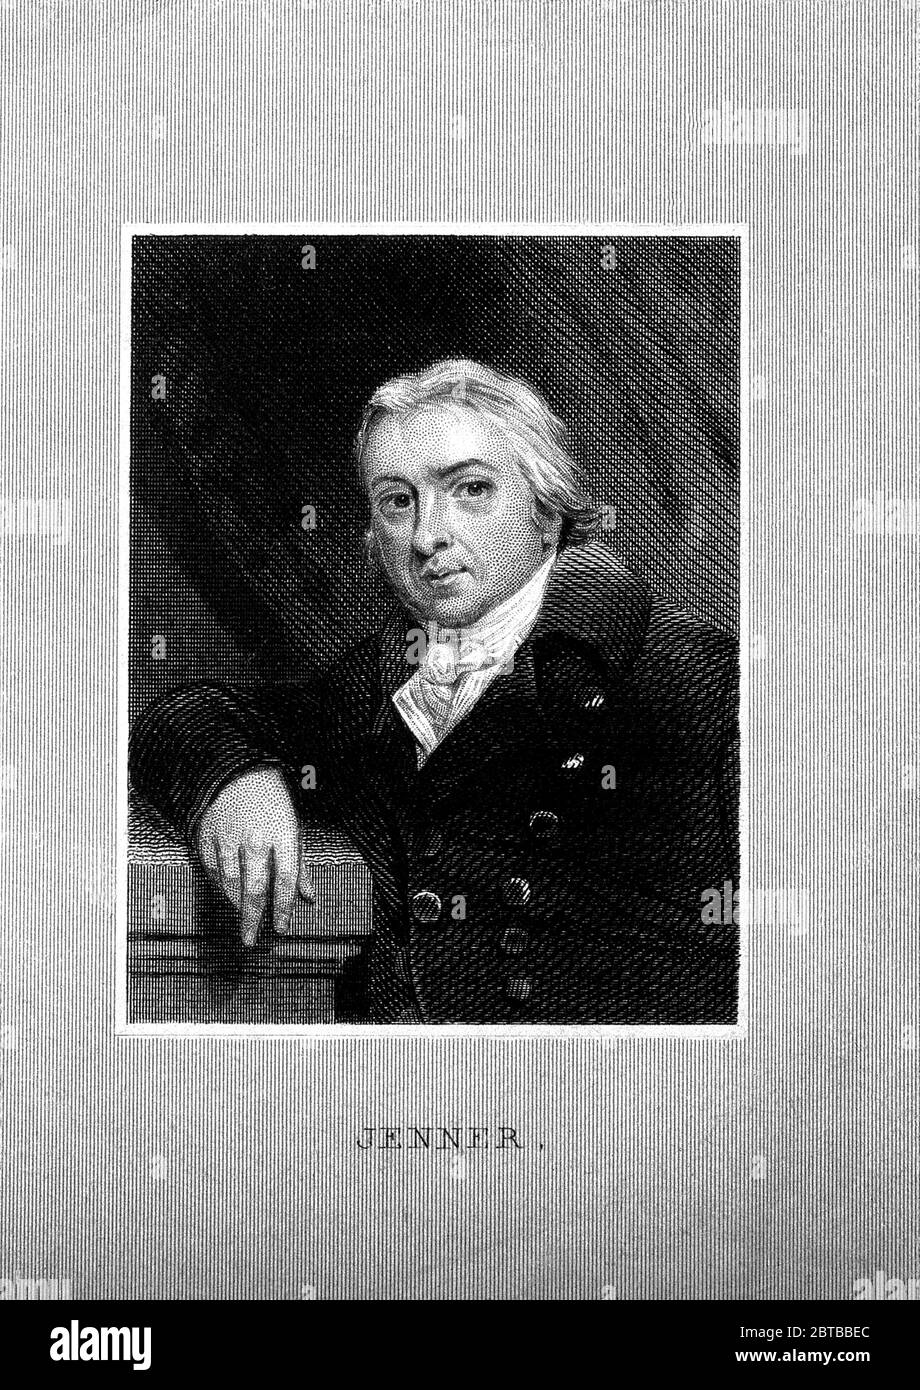 1800 ca., GROSSBRITANNIEN: Der britische Arzt, Virologe und Naturforscher EDWARD JENNER ( 1749 - 1823 ), der an der Entwicklung des POCKENIMPFES mitwirkte. Porträt nach John Raphael Smith . - IMPFUNG - VIRUS - VIROLOGO - VIROLOGE - ANTIVAIOLOSA - ANTIVAIOLO - ANTI-VAIOLO - ANTIVAIOLO - VACCINAZIONE - foto storiche - scienziato - Wissenschaftler - Portrait - ritratto - GRAND BRETAGNA - DOTTORE - MEDICO - MEDICINA - Medizin - SCIENTIZA - WISSENSCHAFT - illustrazione - Illustration --- Archivio GBB Stockfoto